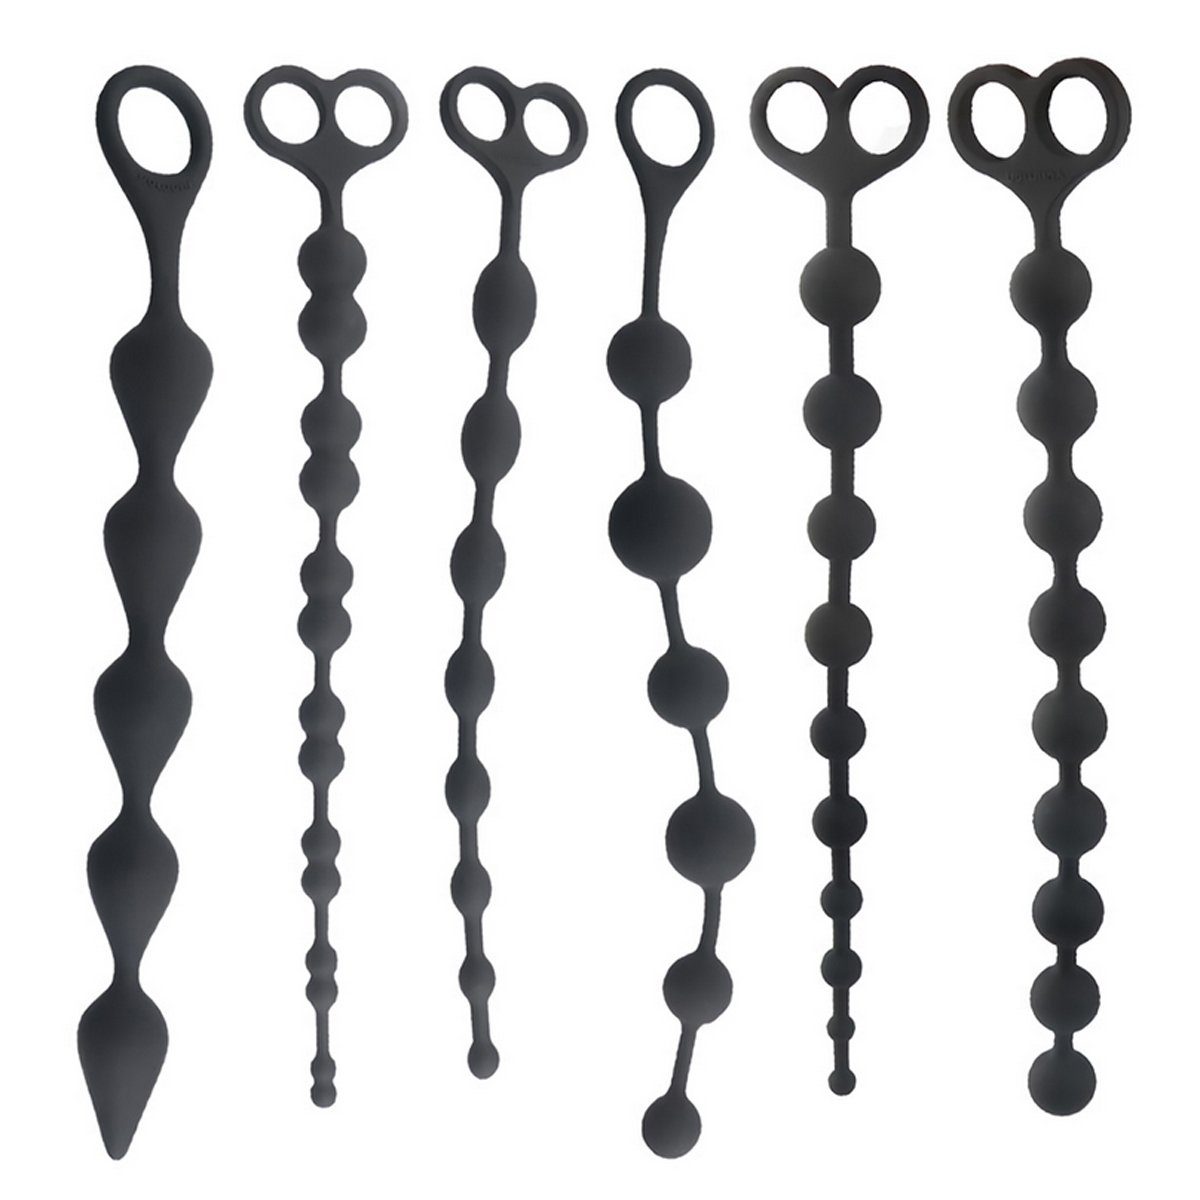 TPFSecret Analkette für Männer und Frauen, ergonomische große 26,5cm Anal  Perlen Kette, mit 5 Kugeln und unterschiedlichen Durchmesser - Farbe:  Schwarz